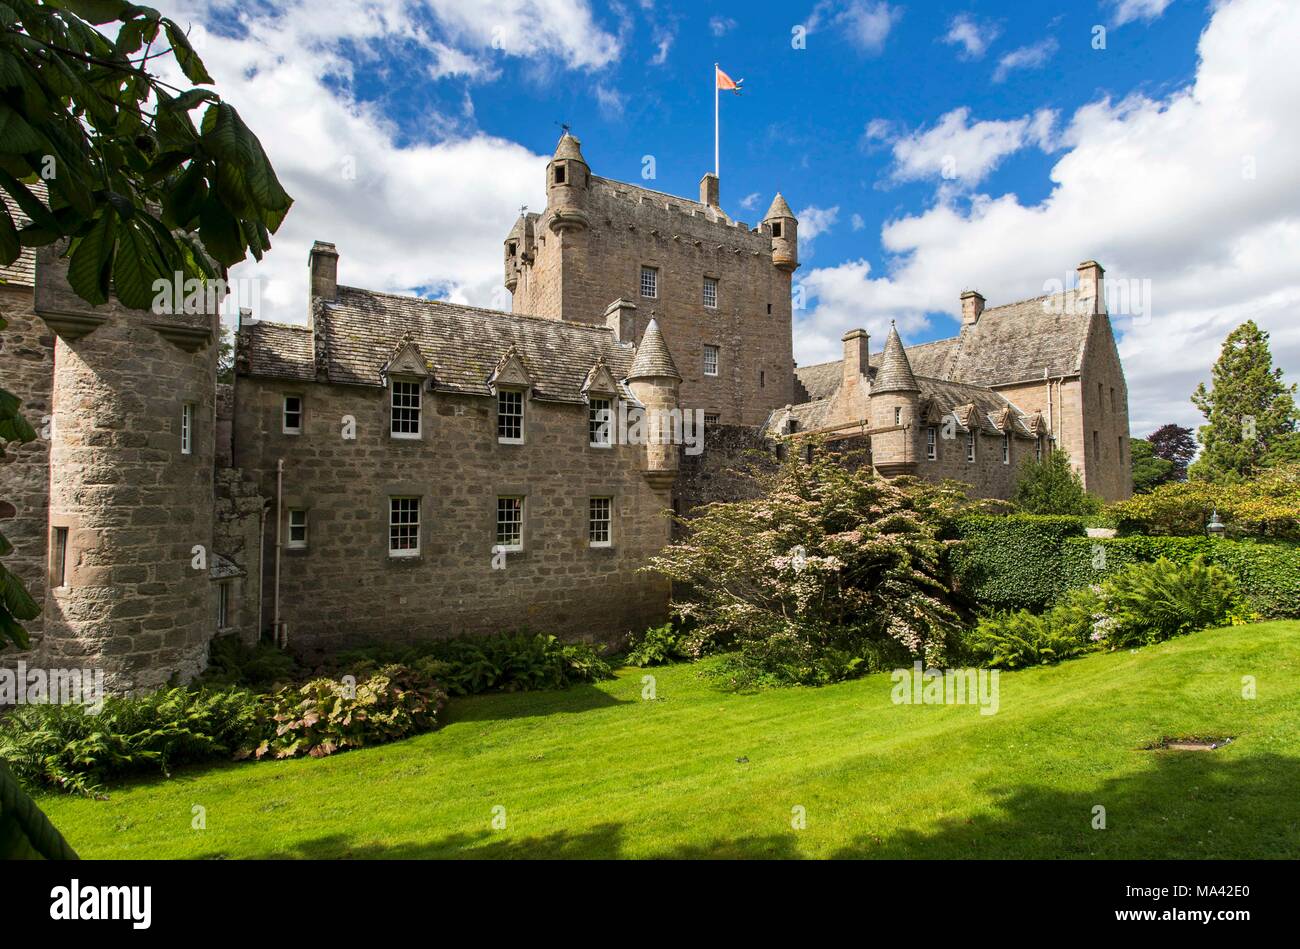 Cawdor Castle and gardens, Scotland Stock Photo